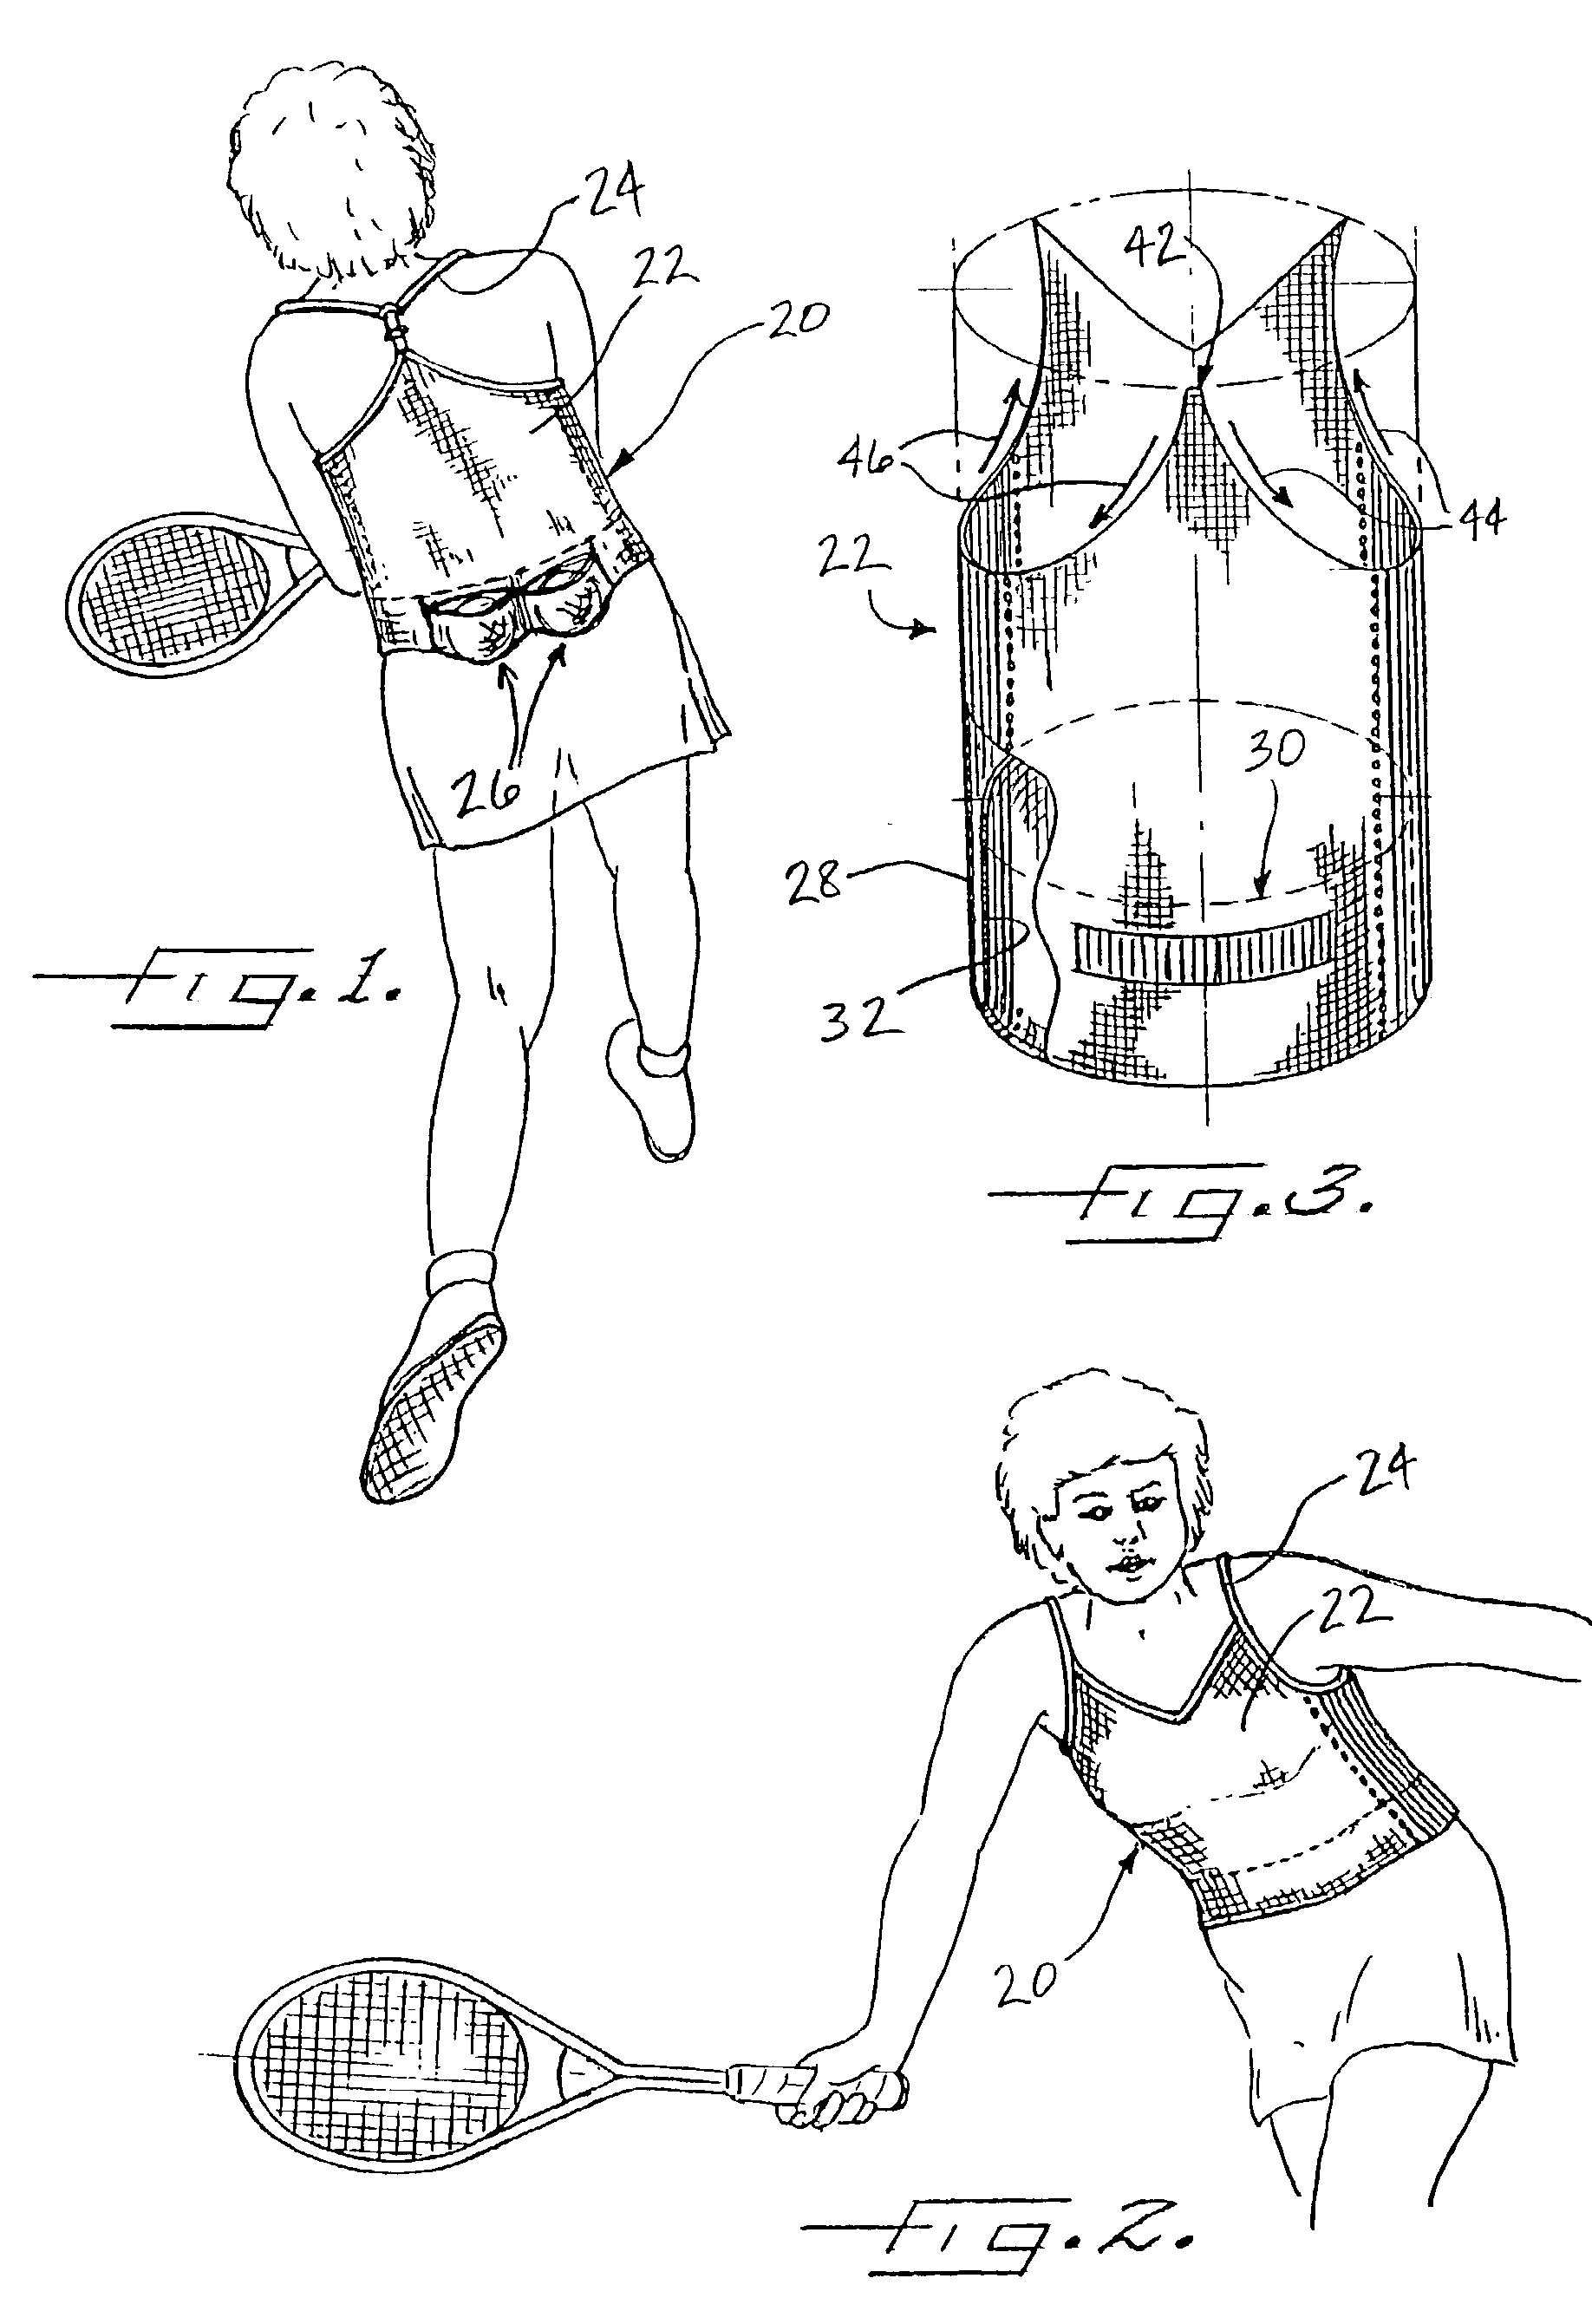 Tennis vest having knit-in ball pockets